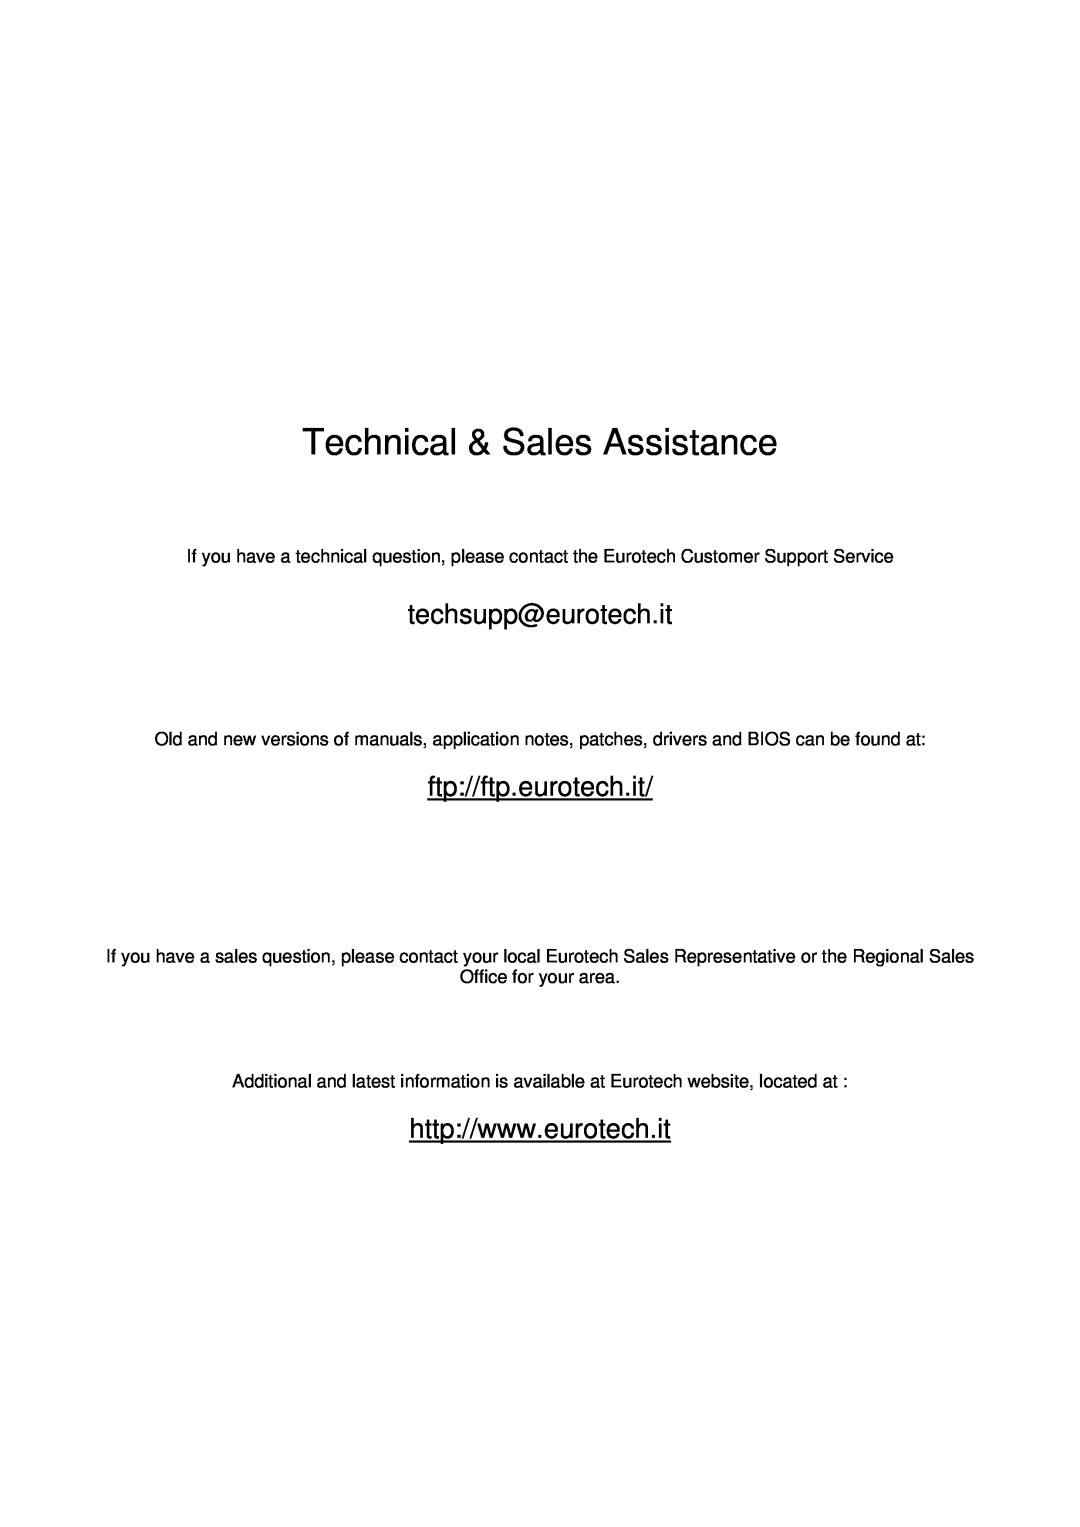 Eurotech Appliances CPU-1461 user manual Technical & Sales Assistance, techsupp@eurotech.it, ftp//ftp.eurotech.it 